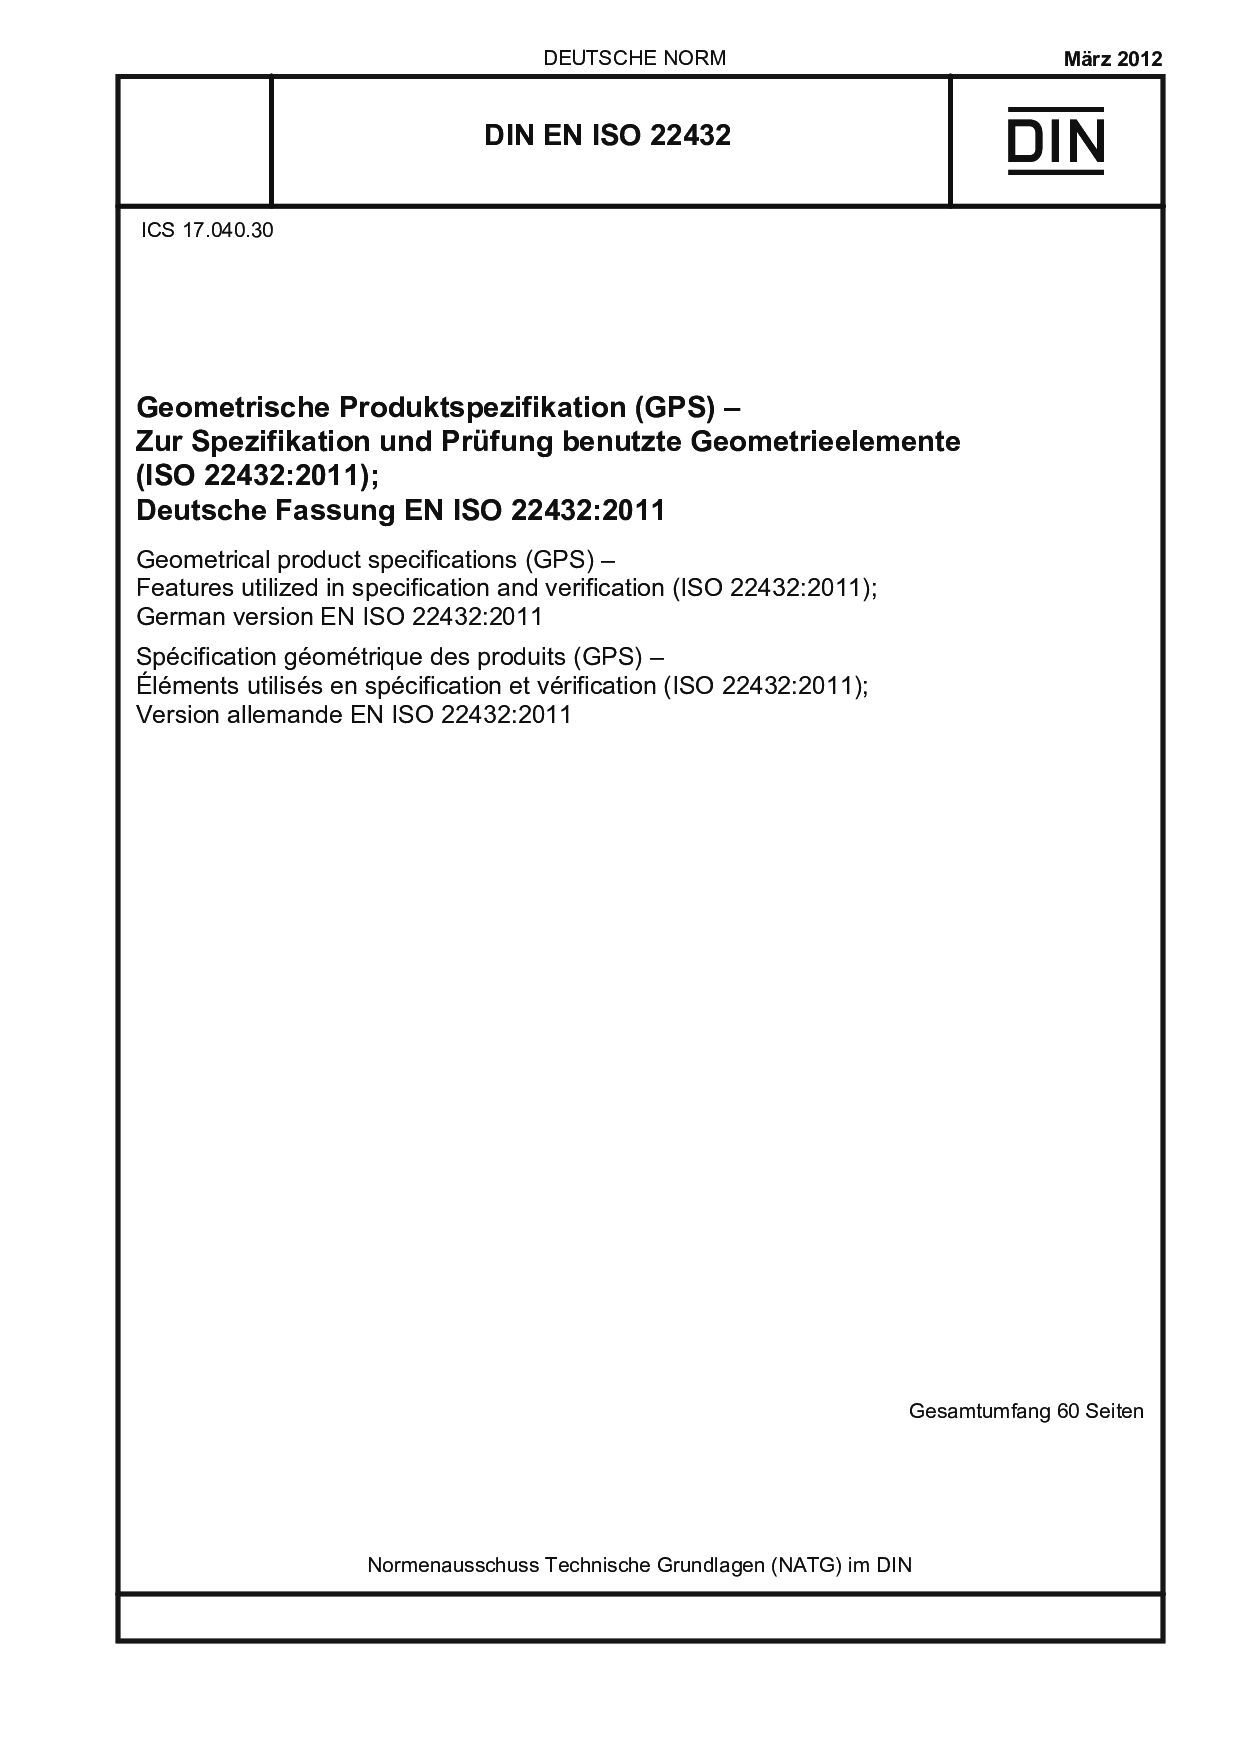 DIN EN ISO 22432:2012